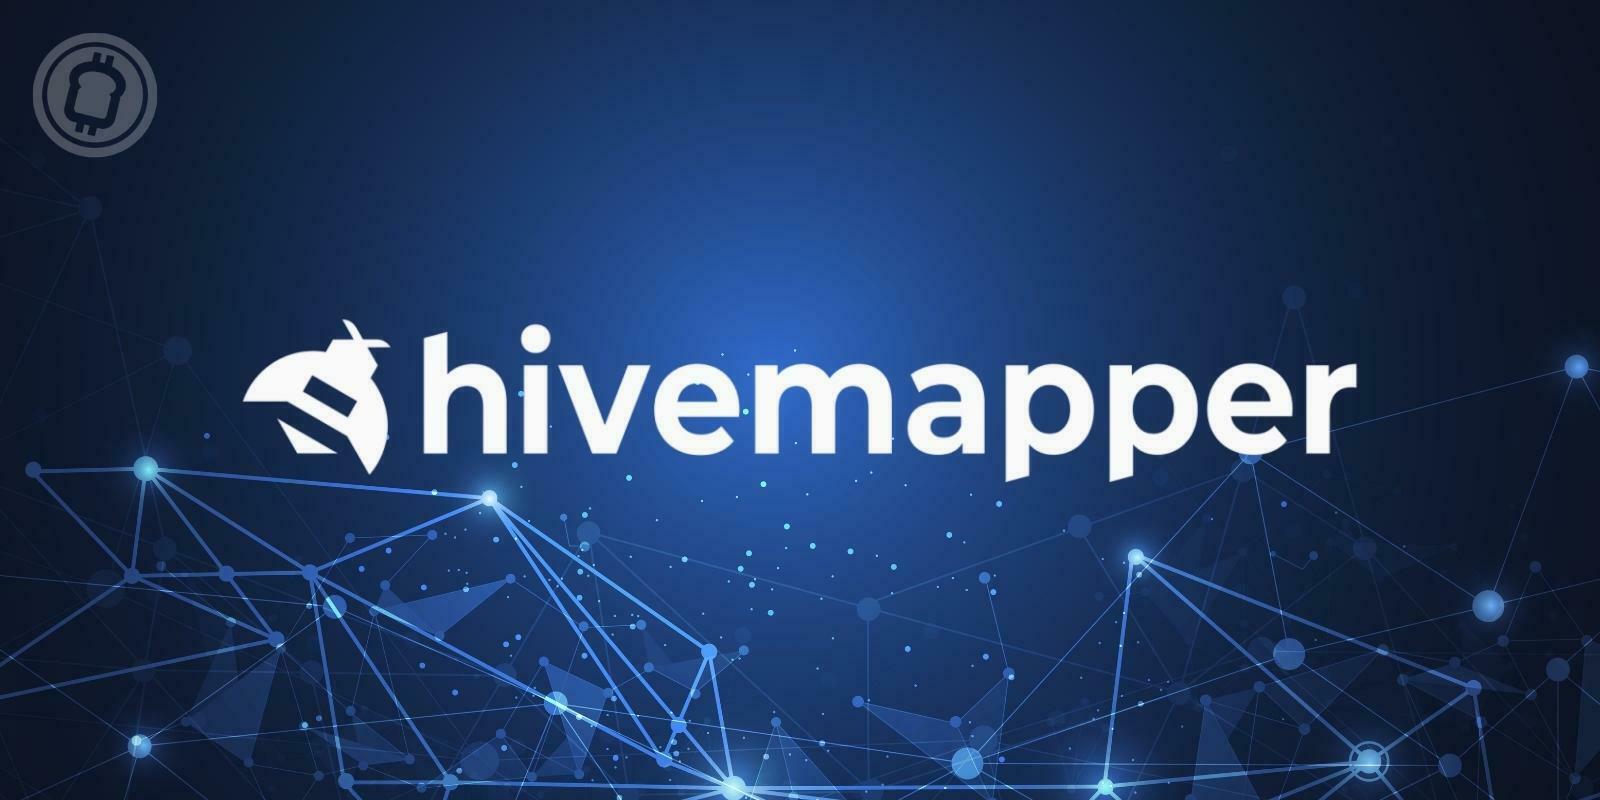 Hivemapper lève 18 millions de dollars pour devenir le Google Maps du Web 3.0